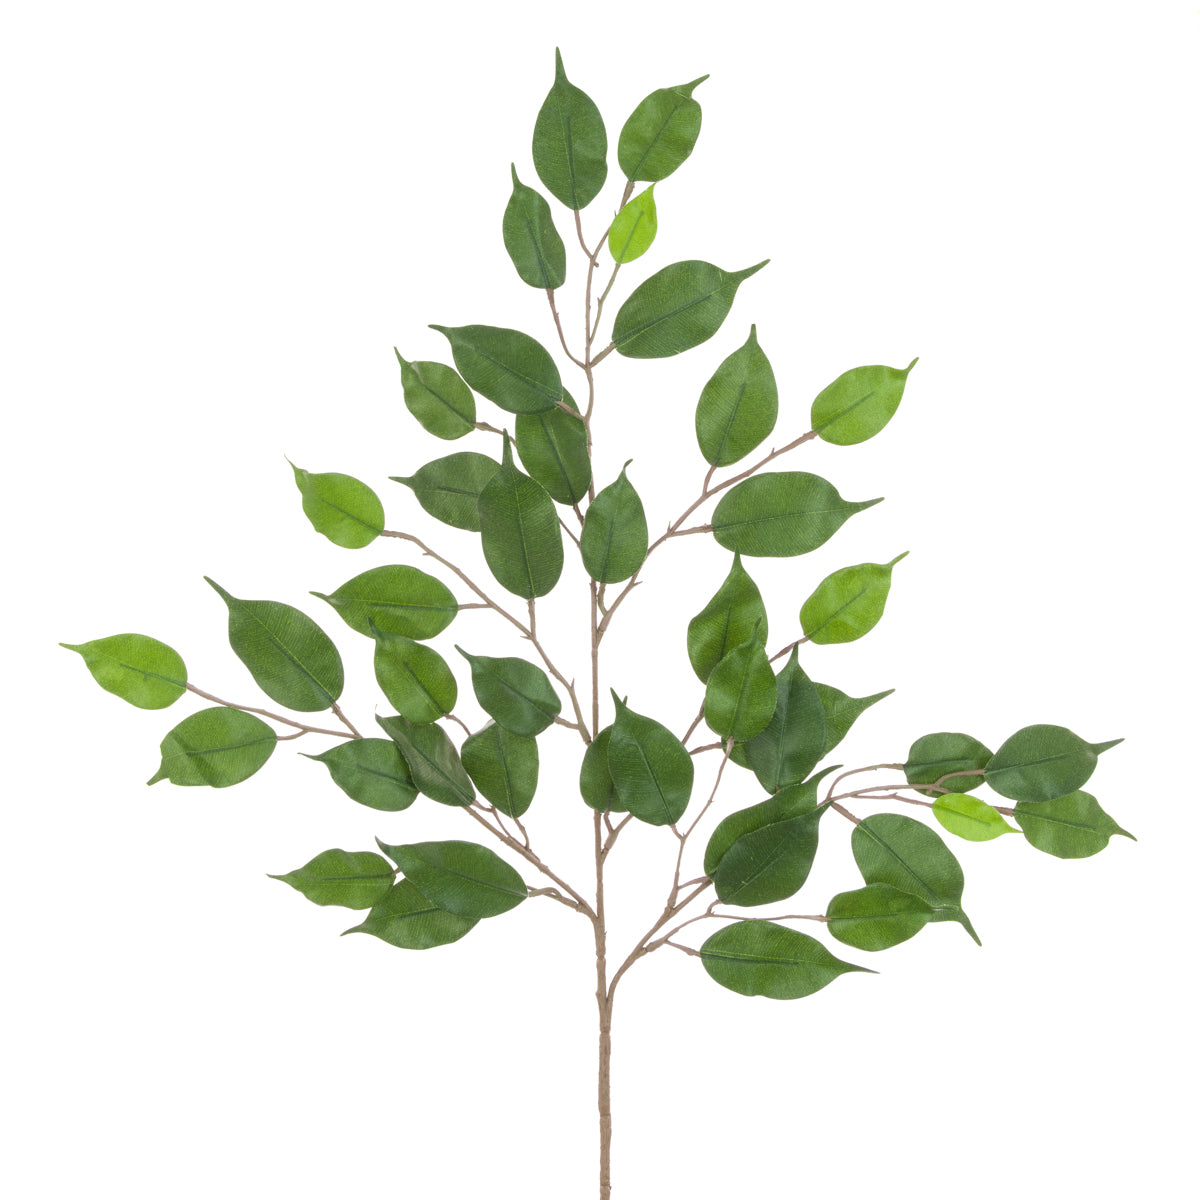 Ficus Spray Stem - Fire retardant - Artificial green